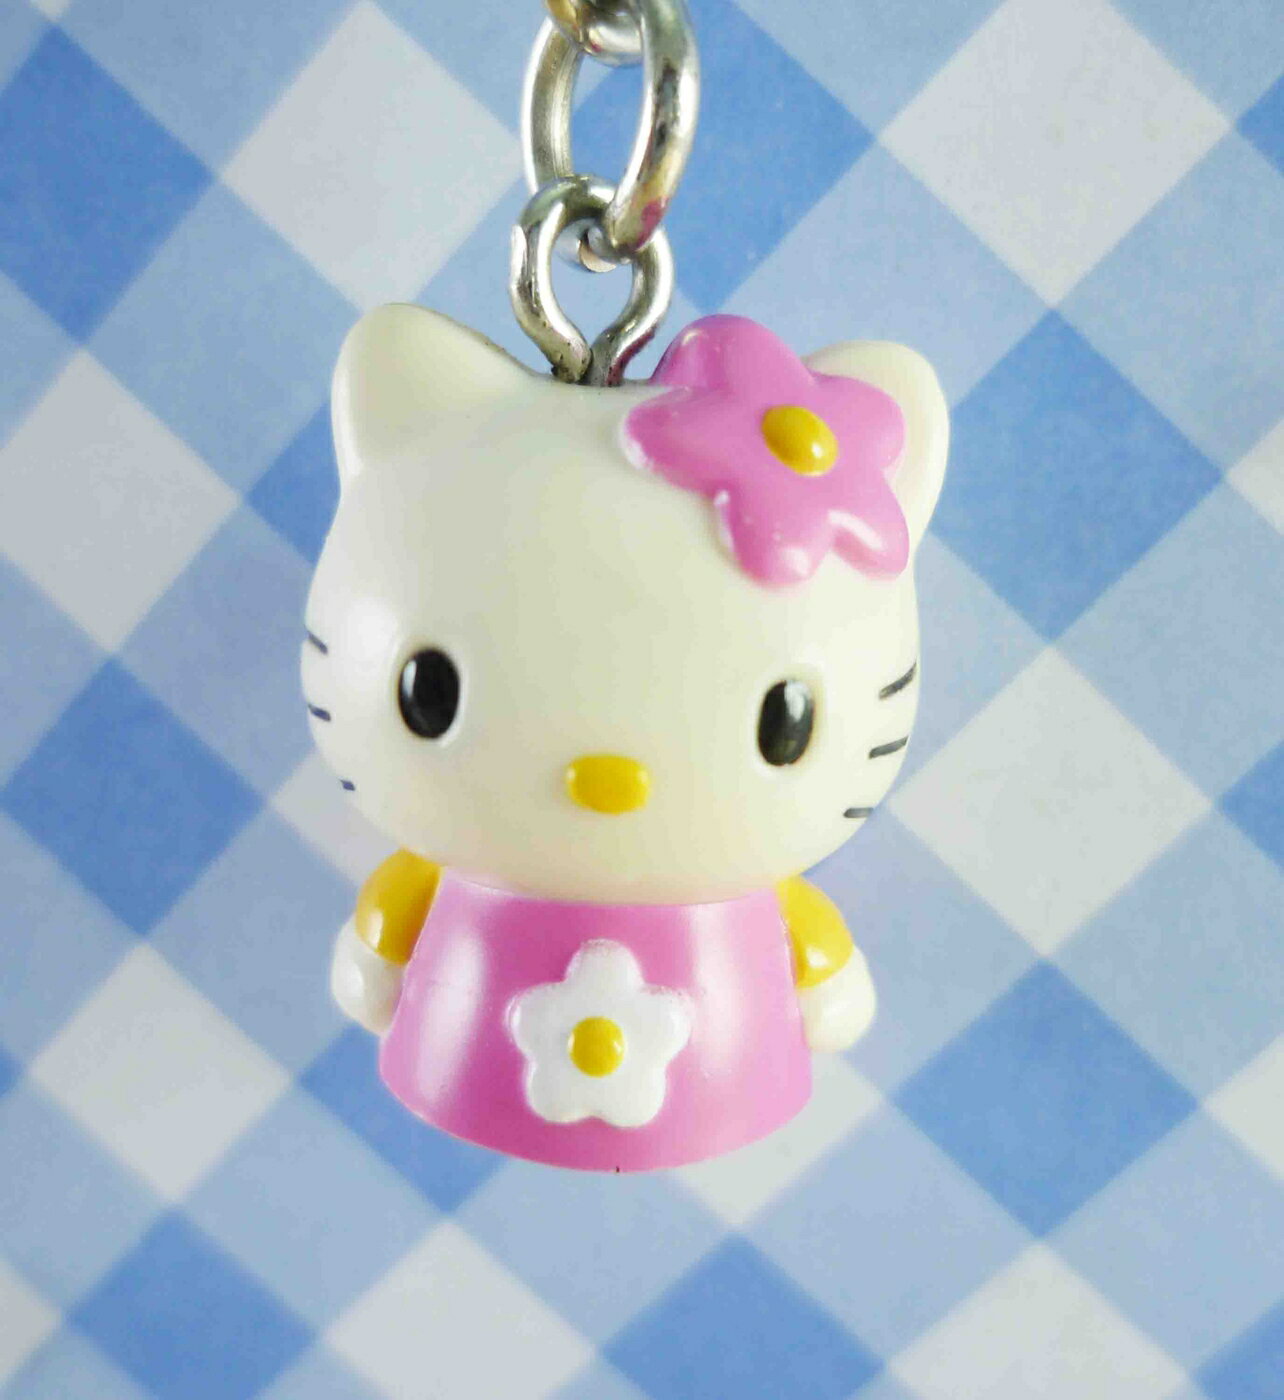 【震撼精品百貨】Hello Kitty 凱蒂貓 KITTY鑰匙圈-粉半身 震撼日式精品百貨